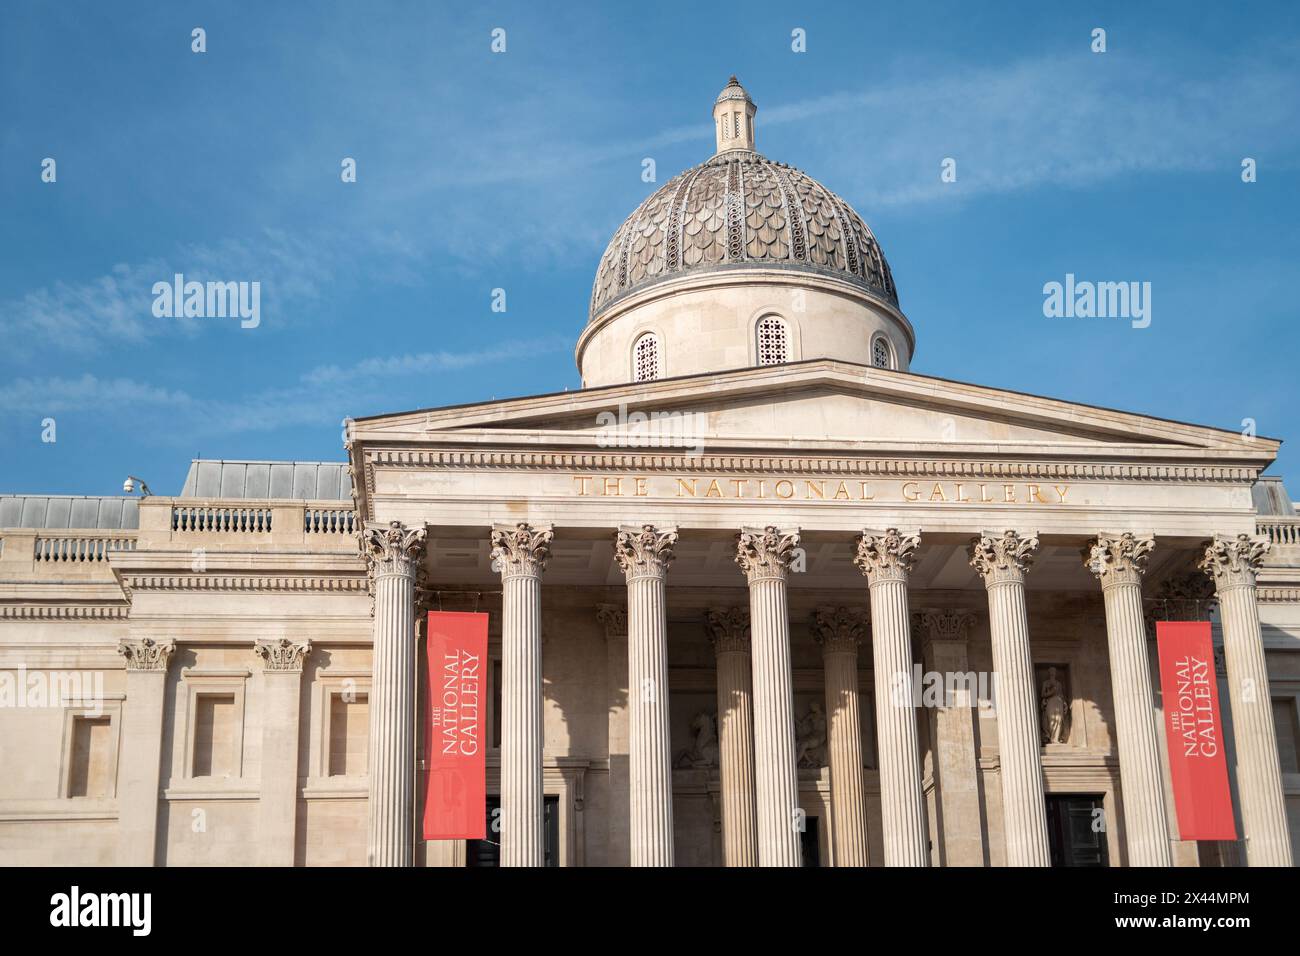 La National Gallery è un museo d'arte situato a Trafalgar Square nella City of Westminster, nel centro di Londra, in Inghilterra. Dettaglio della facciata. Foto Stock